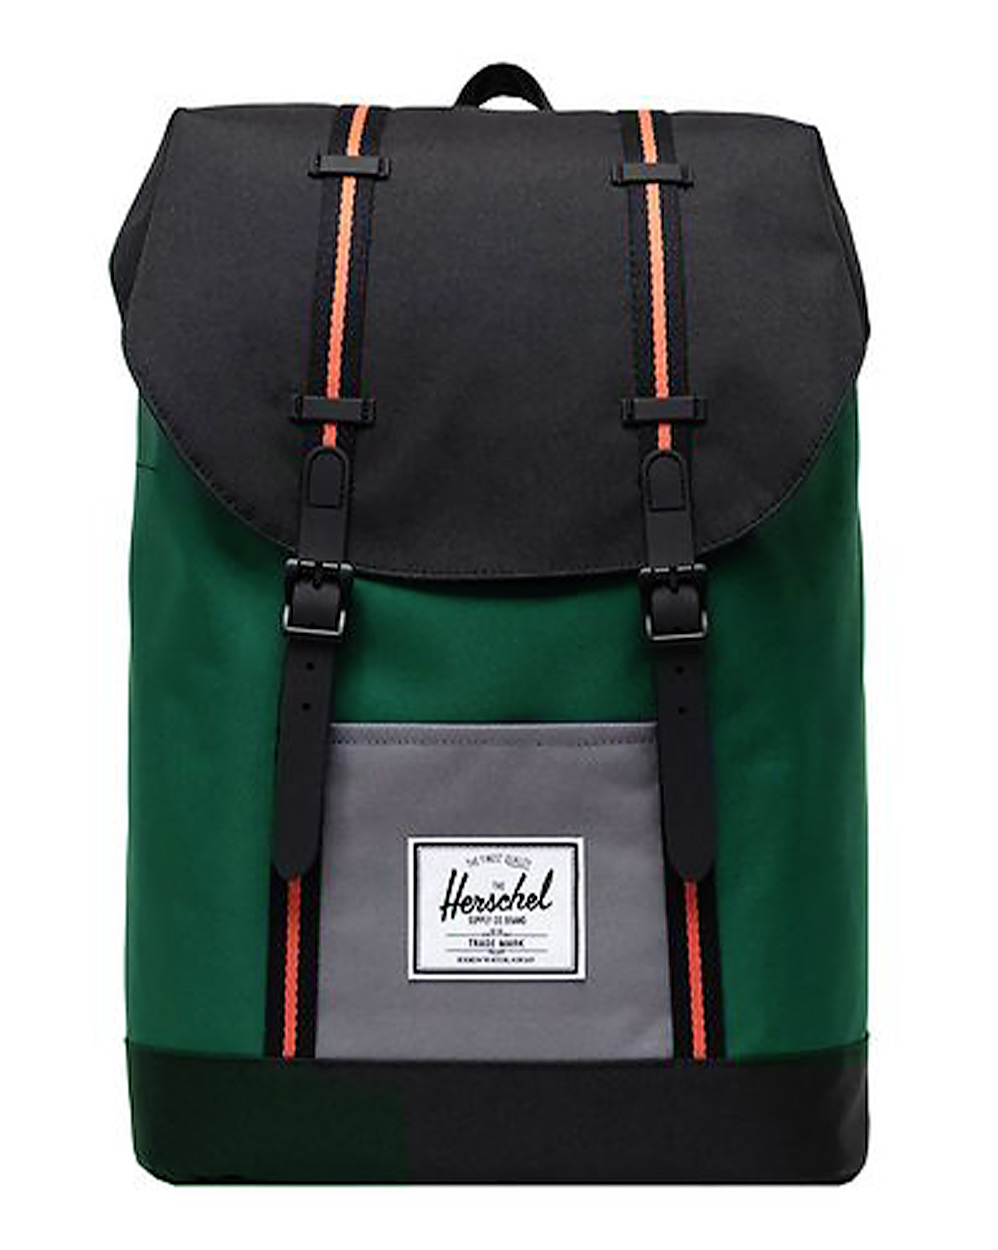 Рюкзак с отделением для 15 ноутбука Herschel Retreat Garden Topiary отзывы